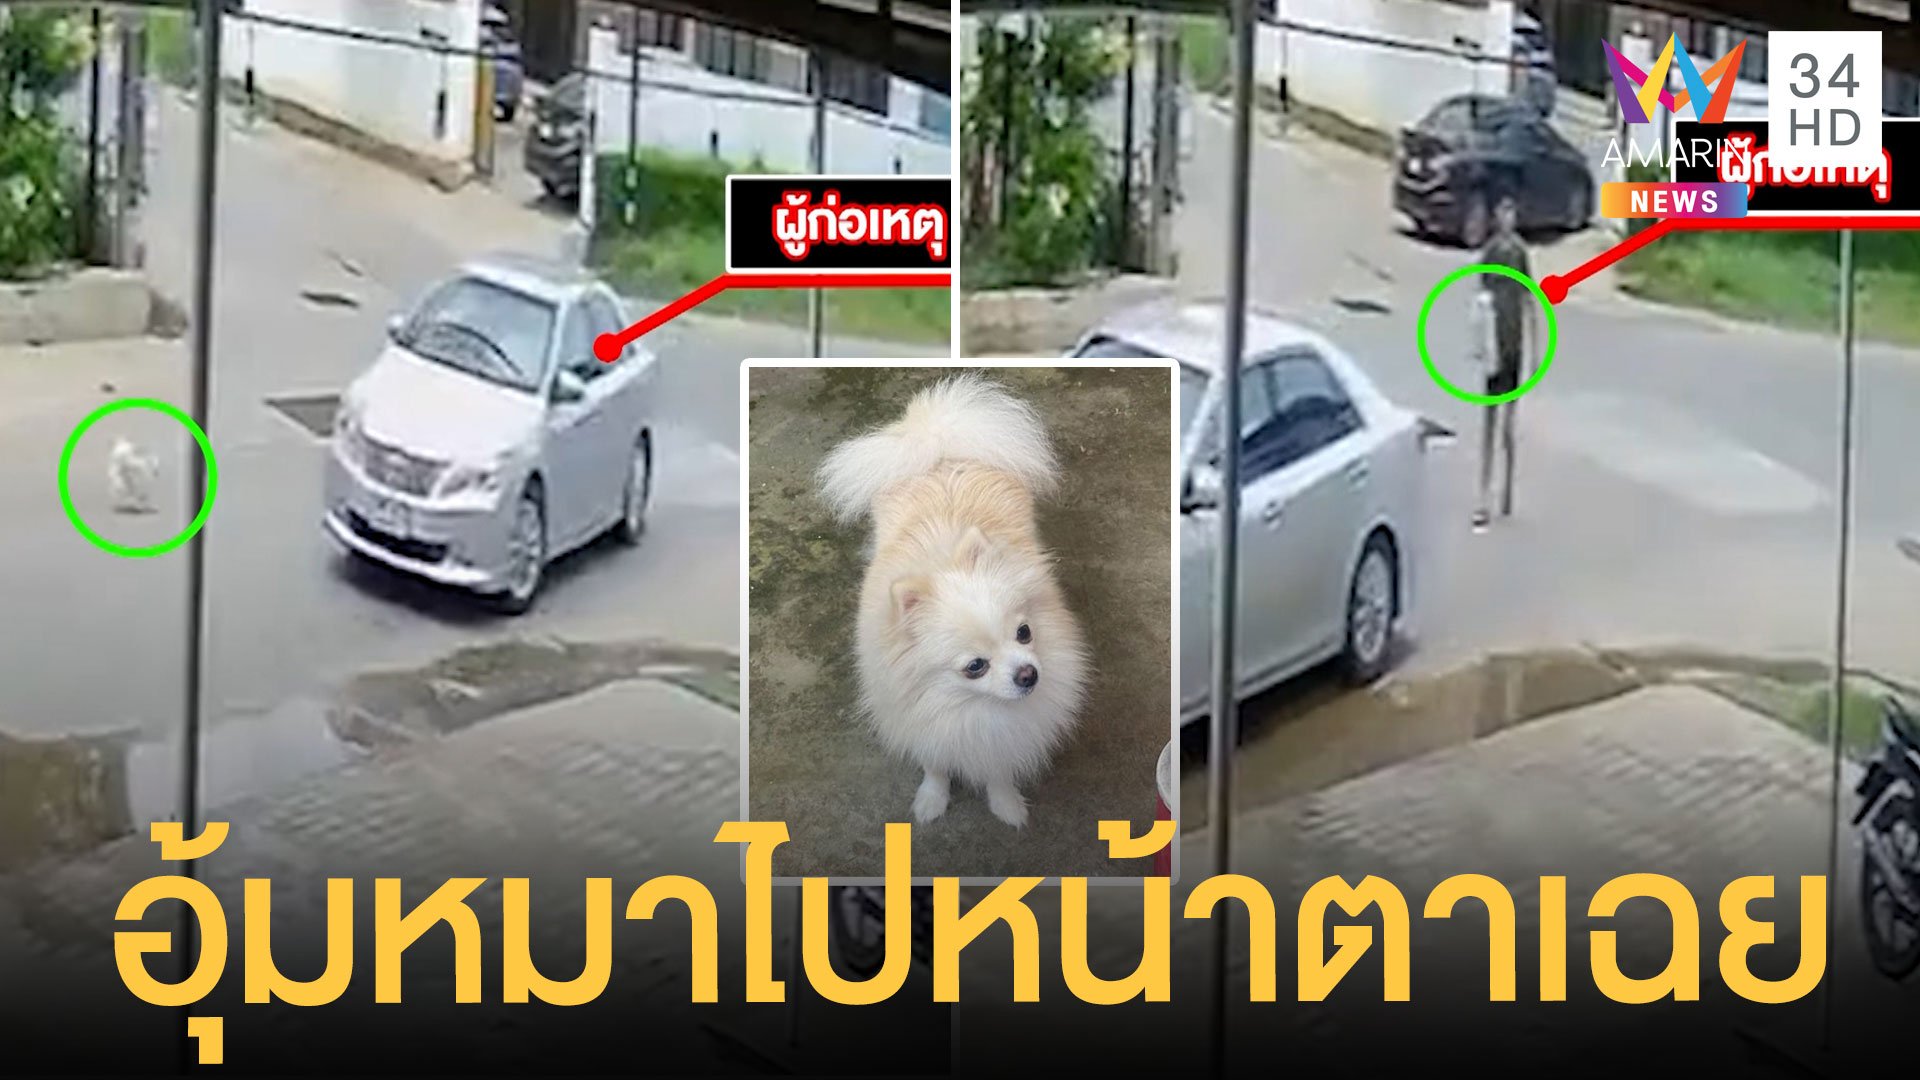 หมาหลุดจากบ้าน เก๋งจอดอุ้มขึ้นรถไปหน้าตาเฉย เจ้าของน้ำตาคลอขอคืน | ข่าวเที่ยงอมรินทร์ | 29 เม.ย. 65 | AMARIN TVHD34